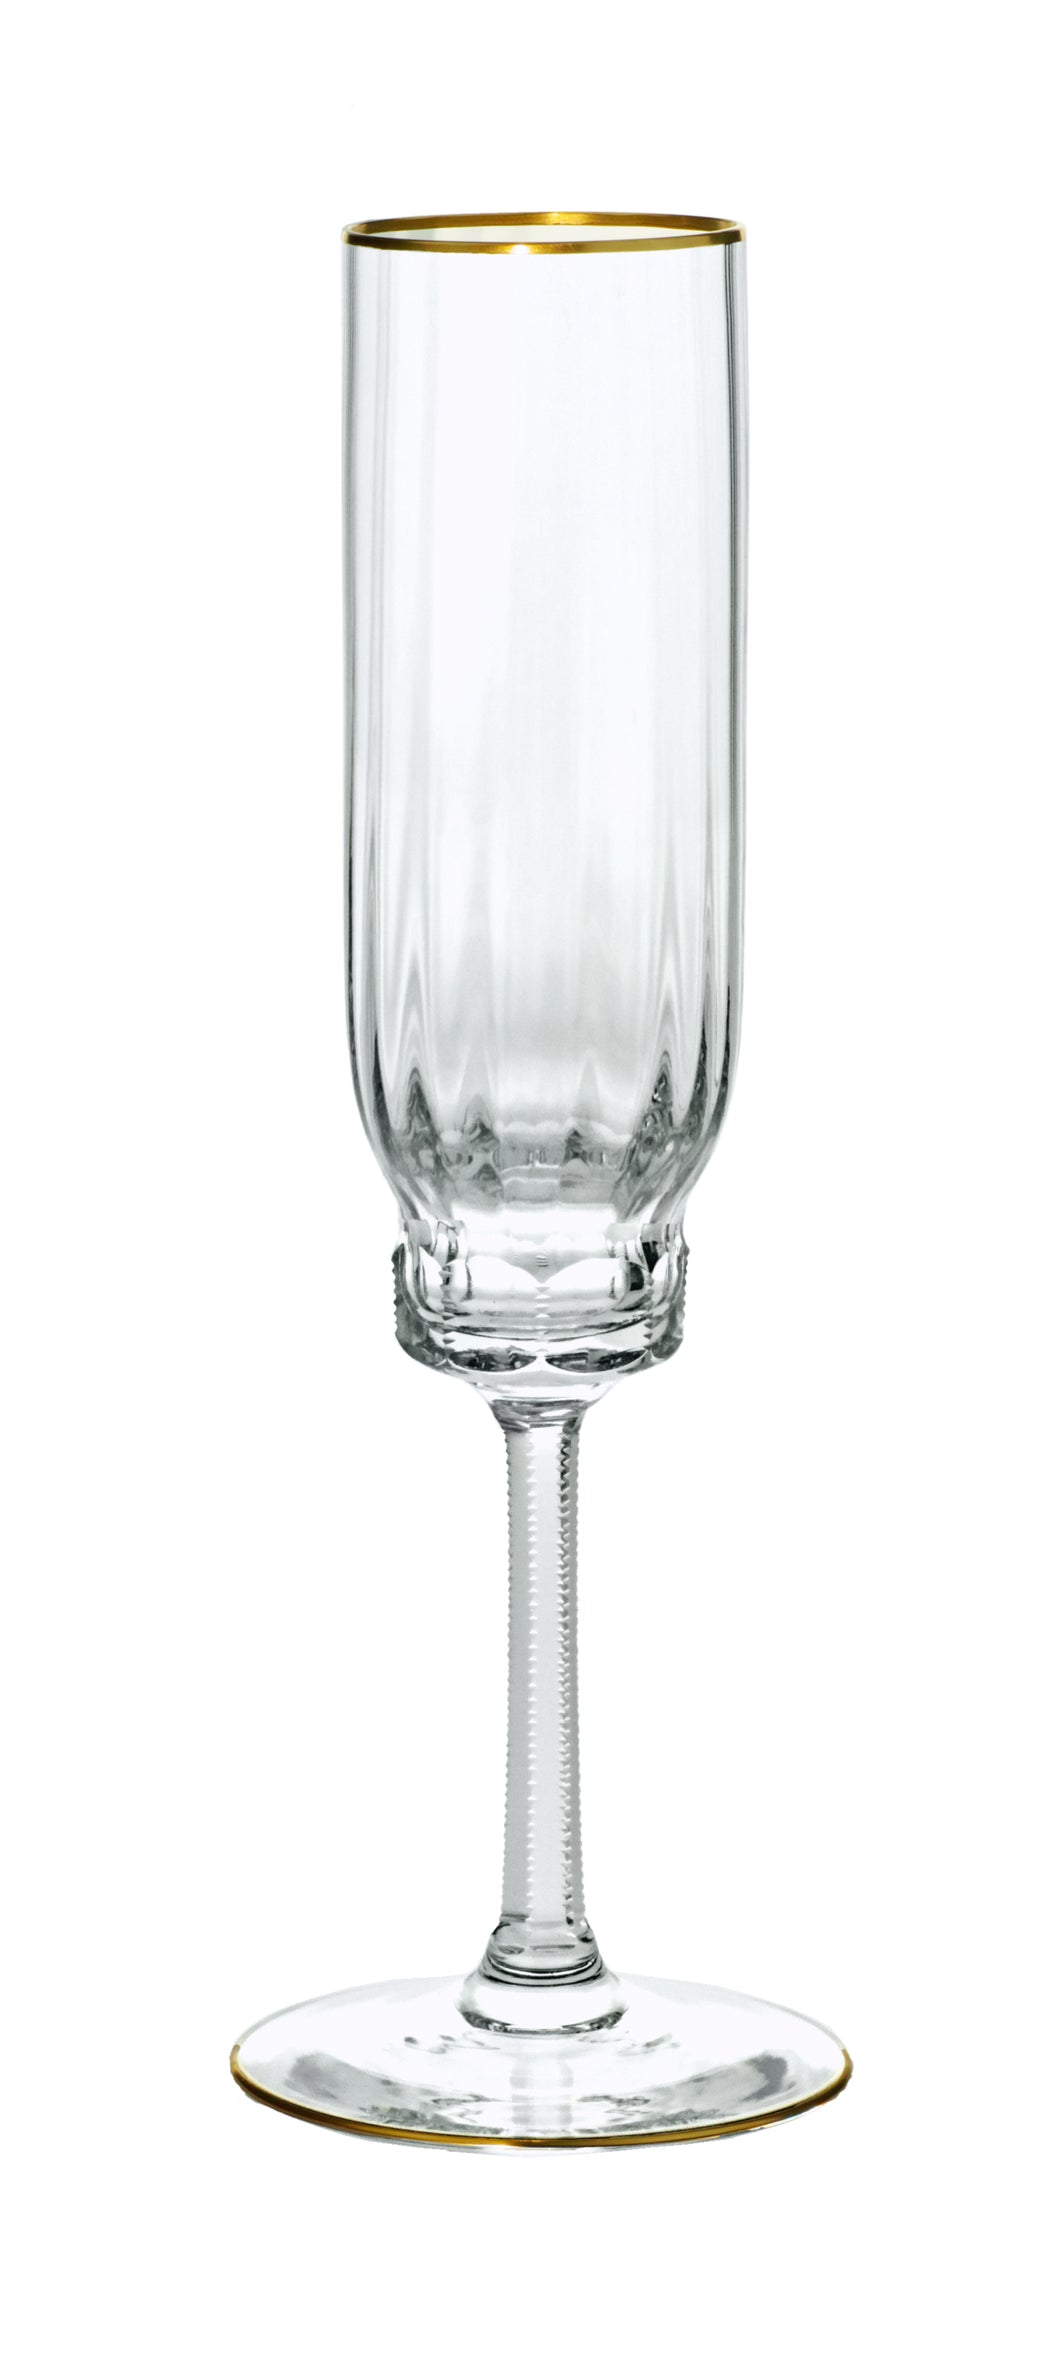 DELPHI Sektglas 263 mm - klares Glas, Stielschliff, Flächenschliff, Eckenschliff, Goldrand